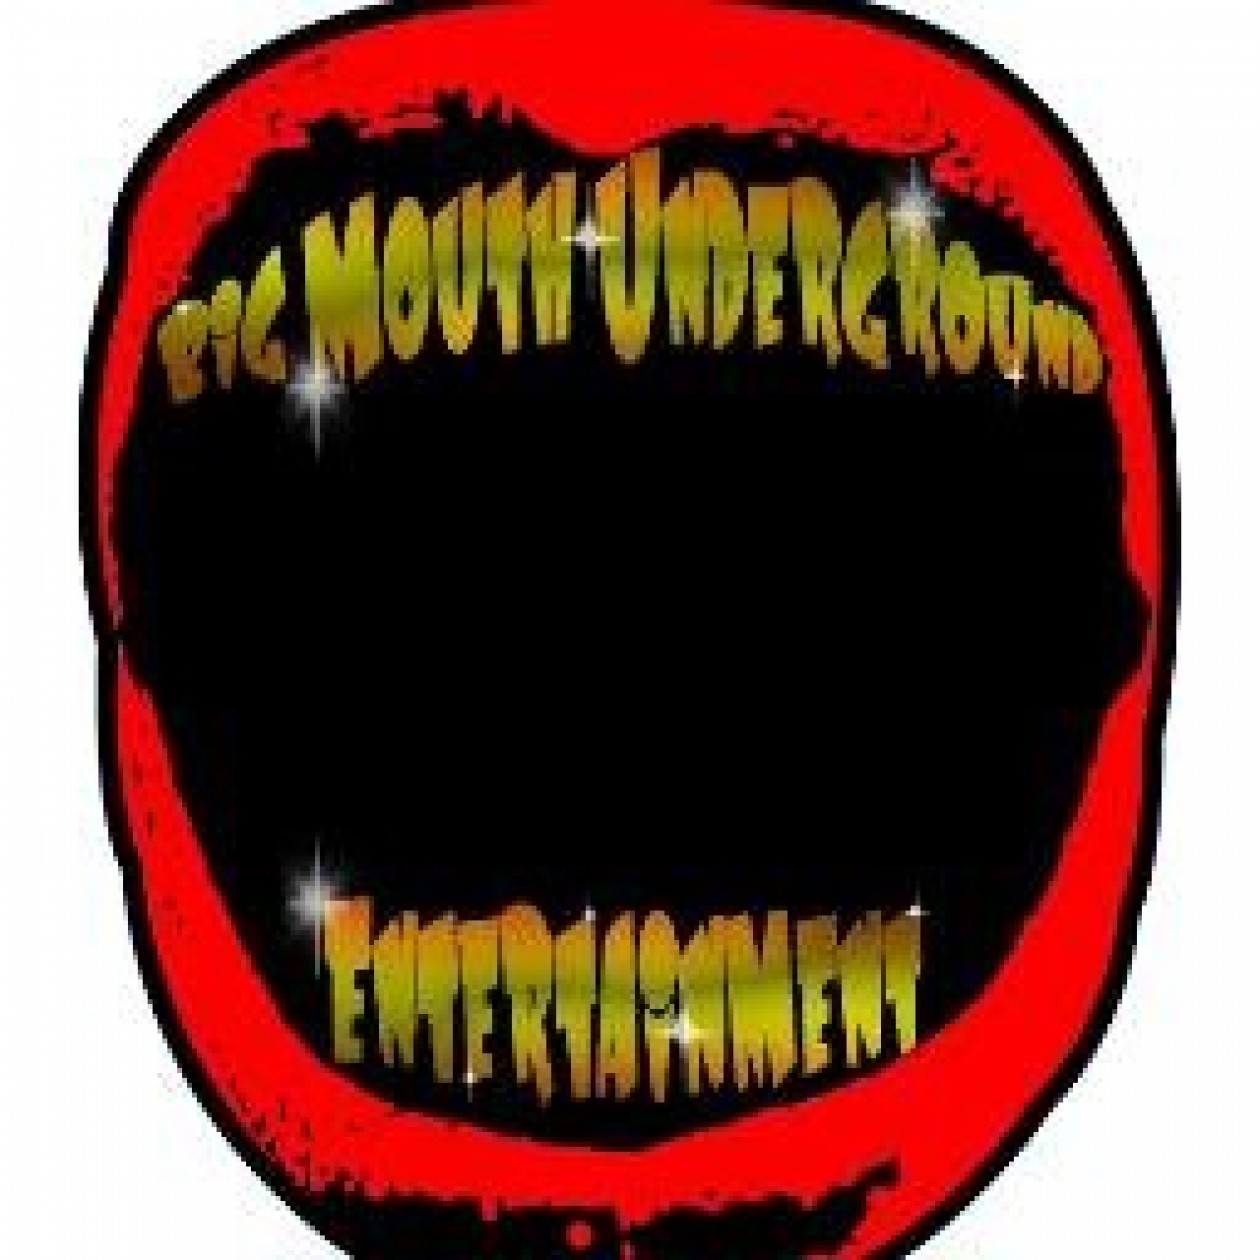 Big Mouth Underground